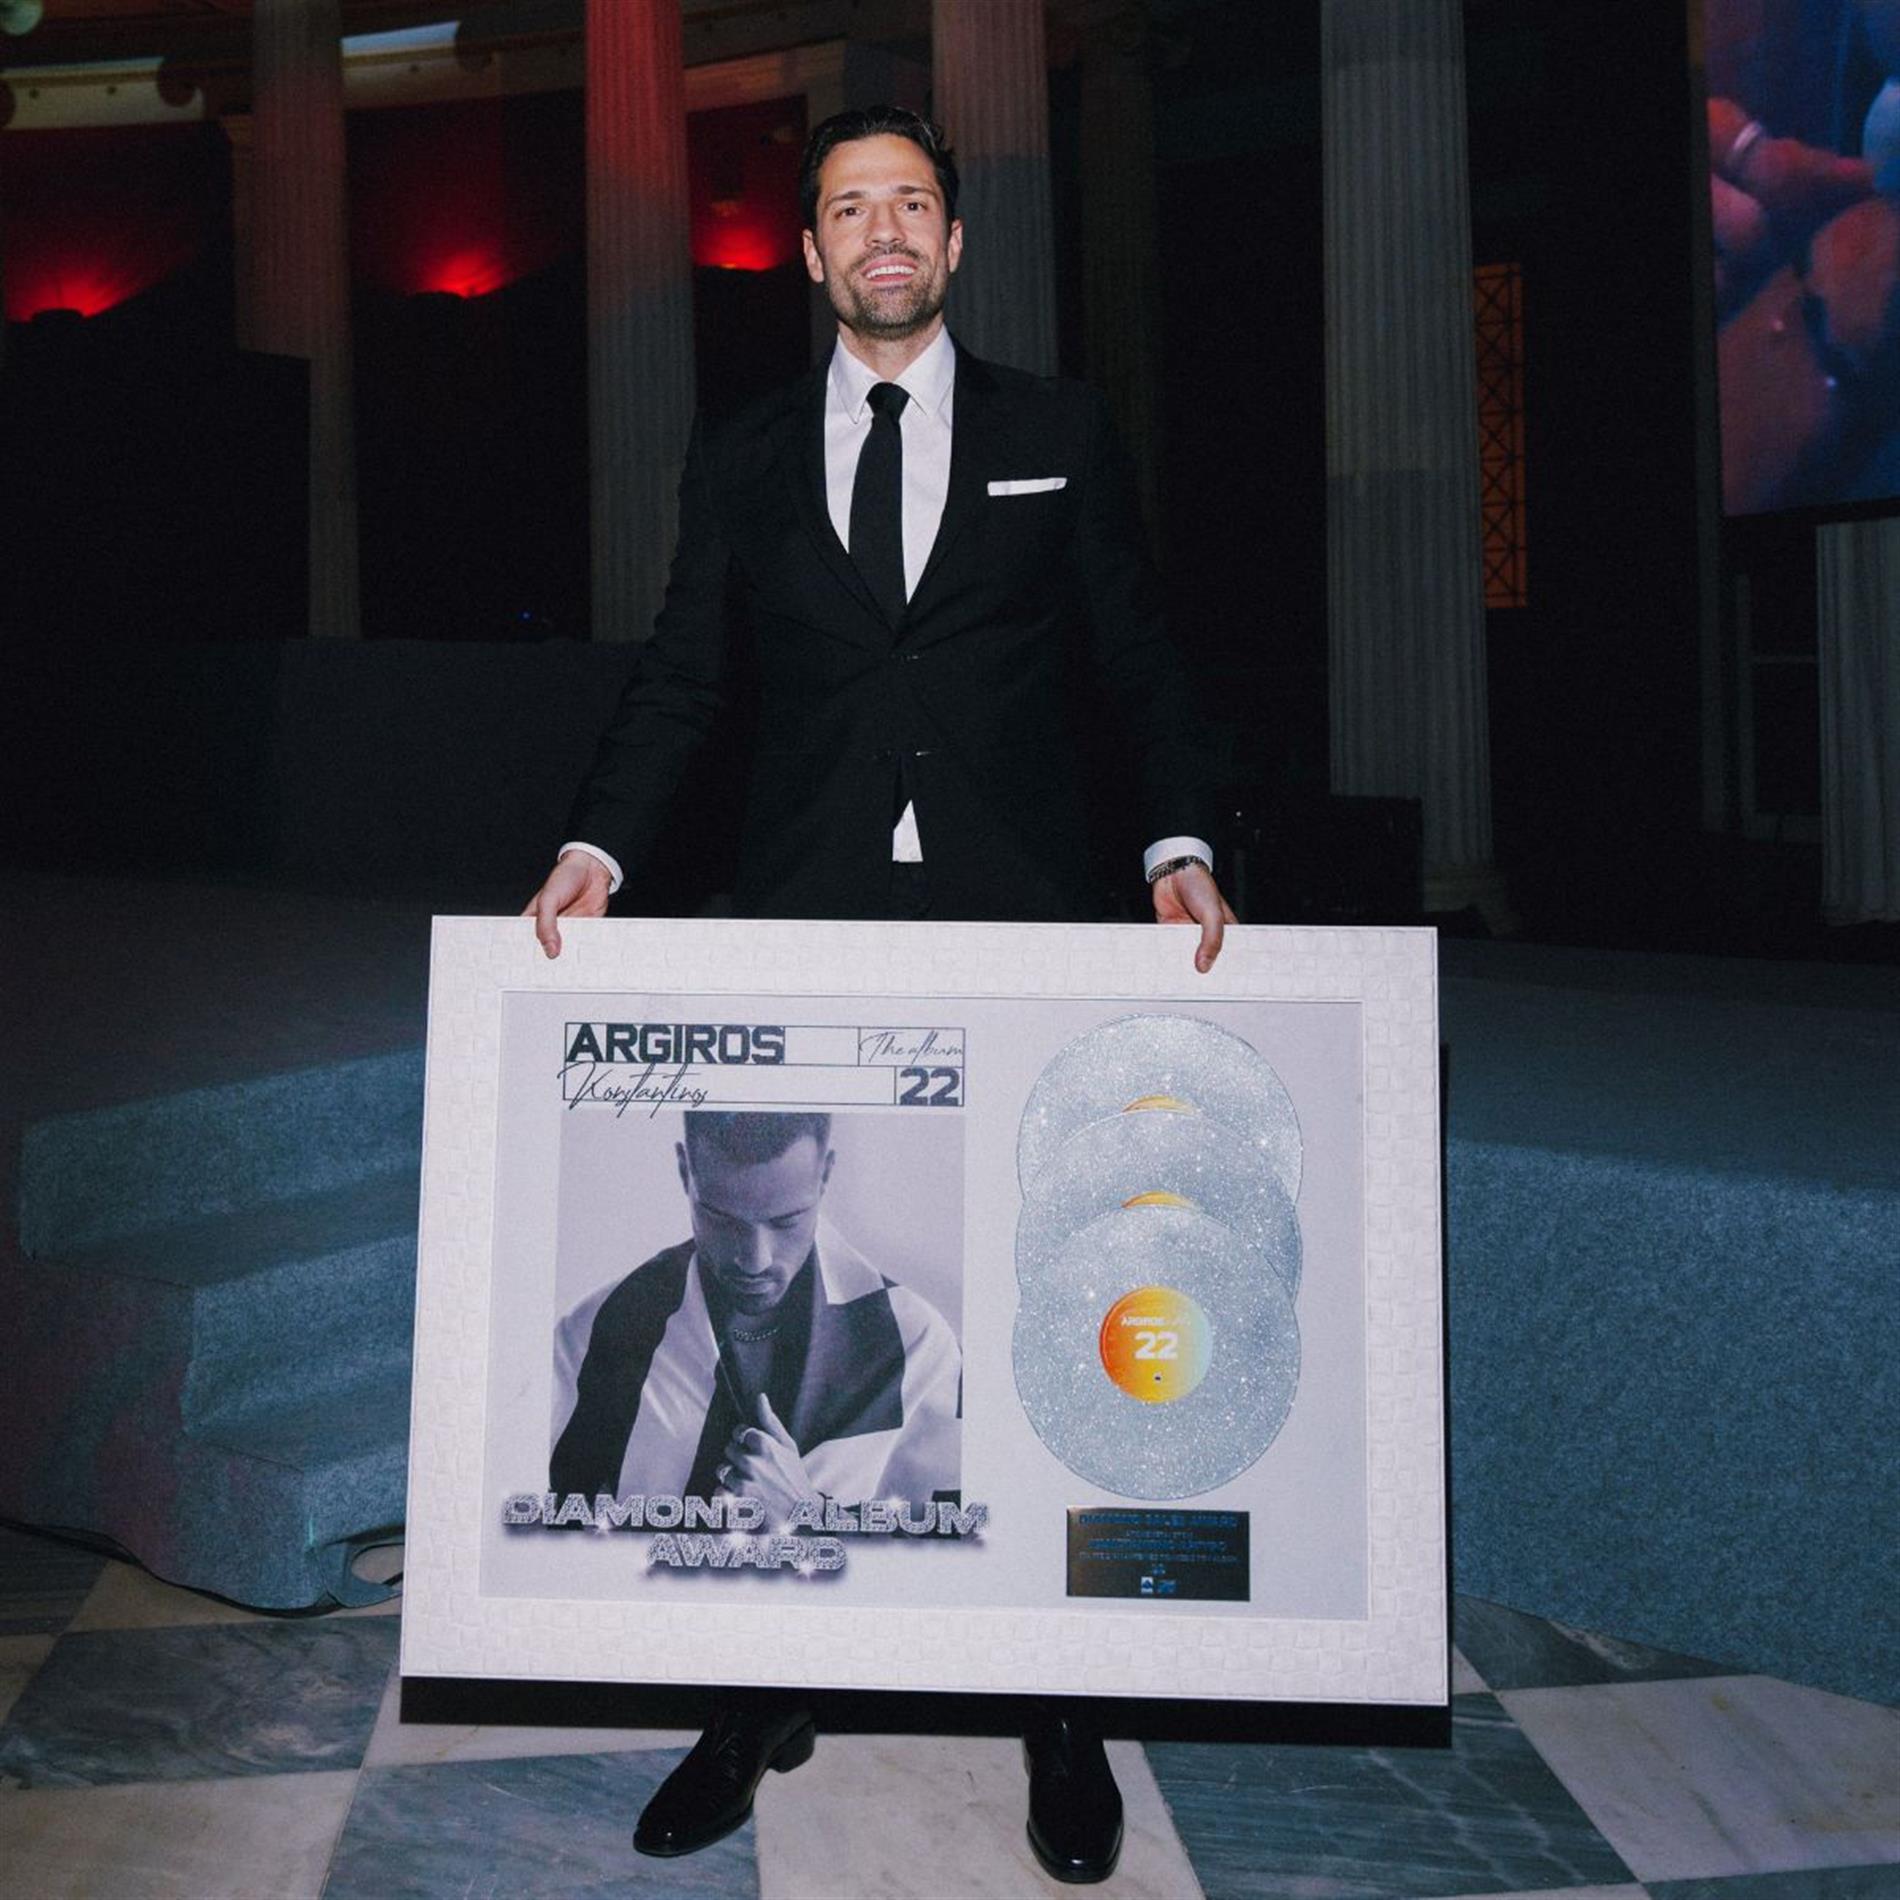 Κωνσταντίνος Αργυρός: Η λαμπερή απονομή στο Ζάππειο για το διαμαντένιο album "22"